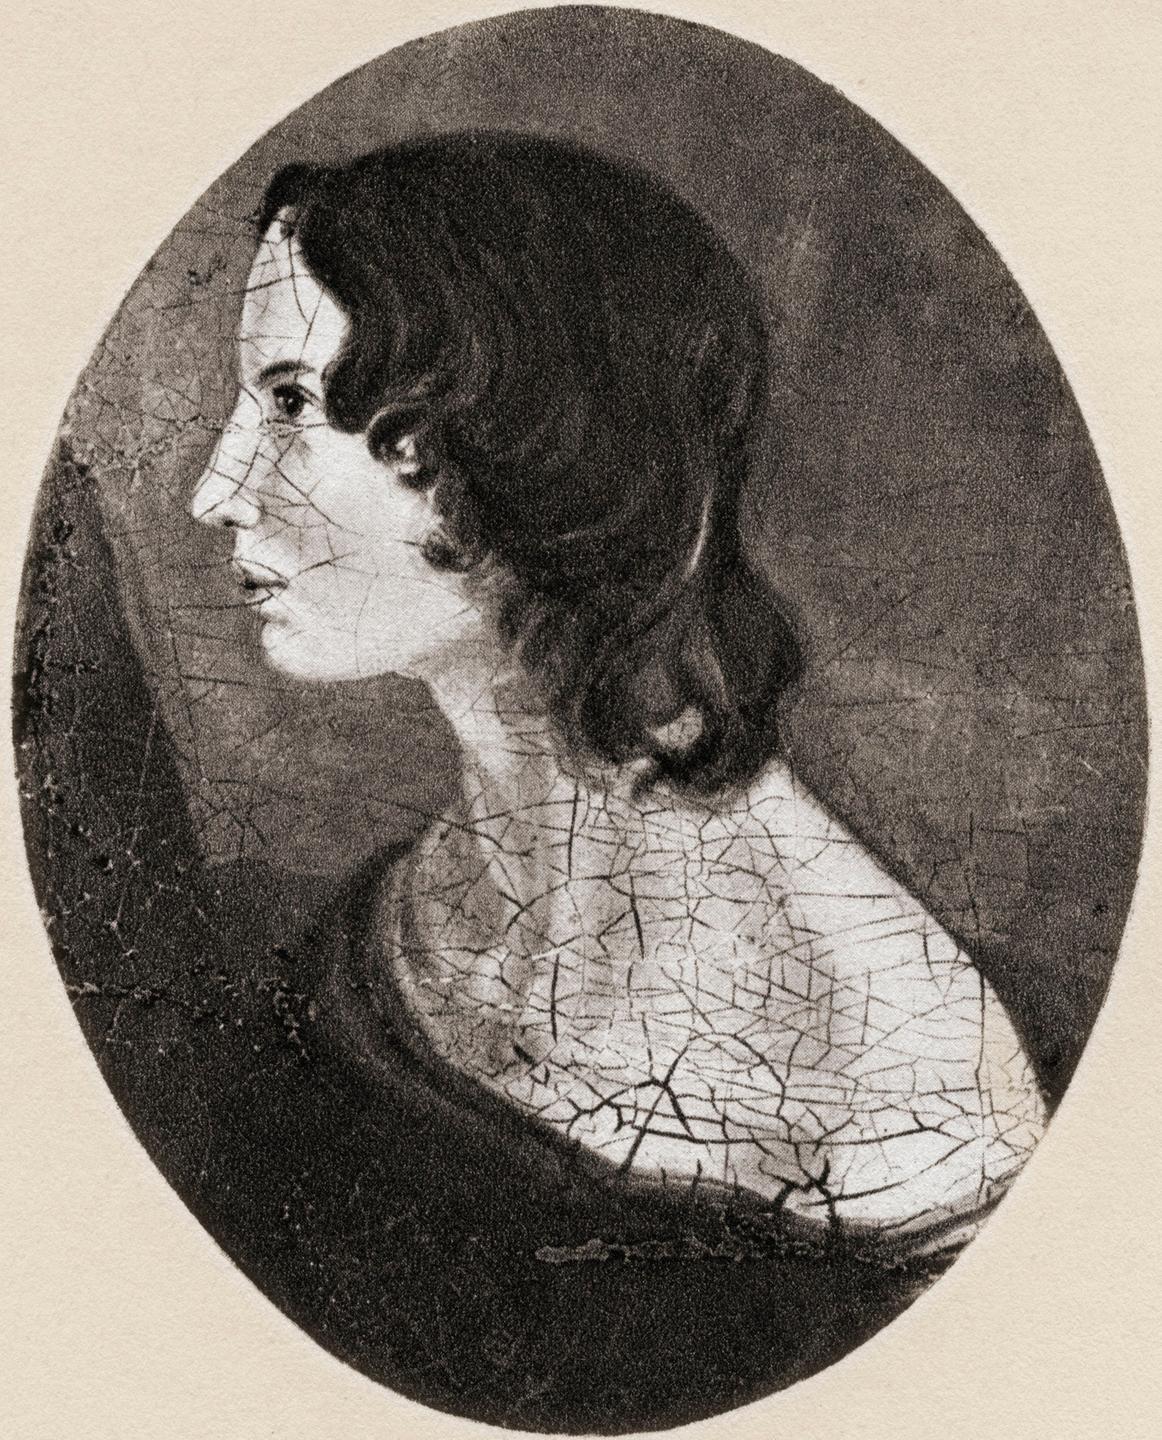 Emily Brontë auf einem Bild ihres Bruders Branwell. Die abgebildete Frau sitzt mit schulterfreiem Oberteil im Profil, sie hat lange, dunkle Haare.